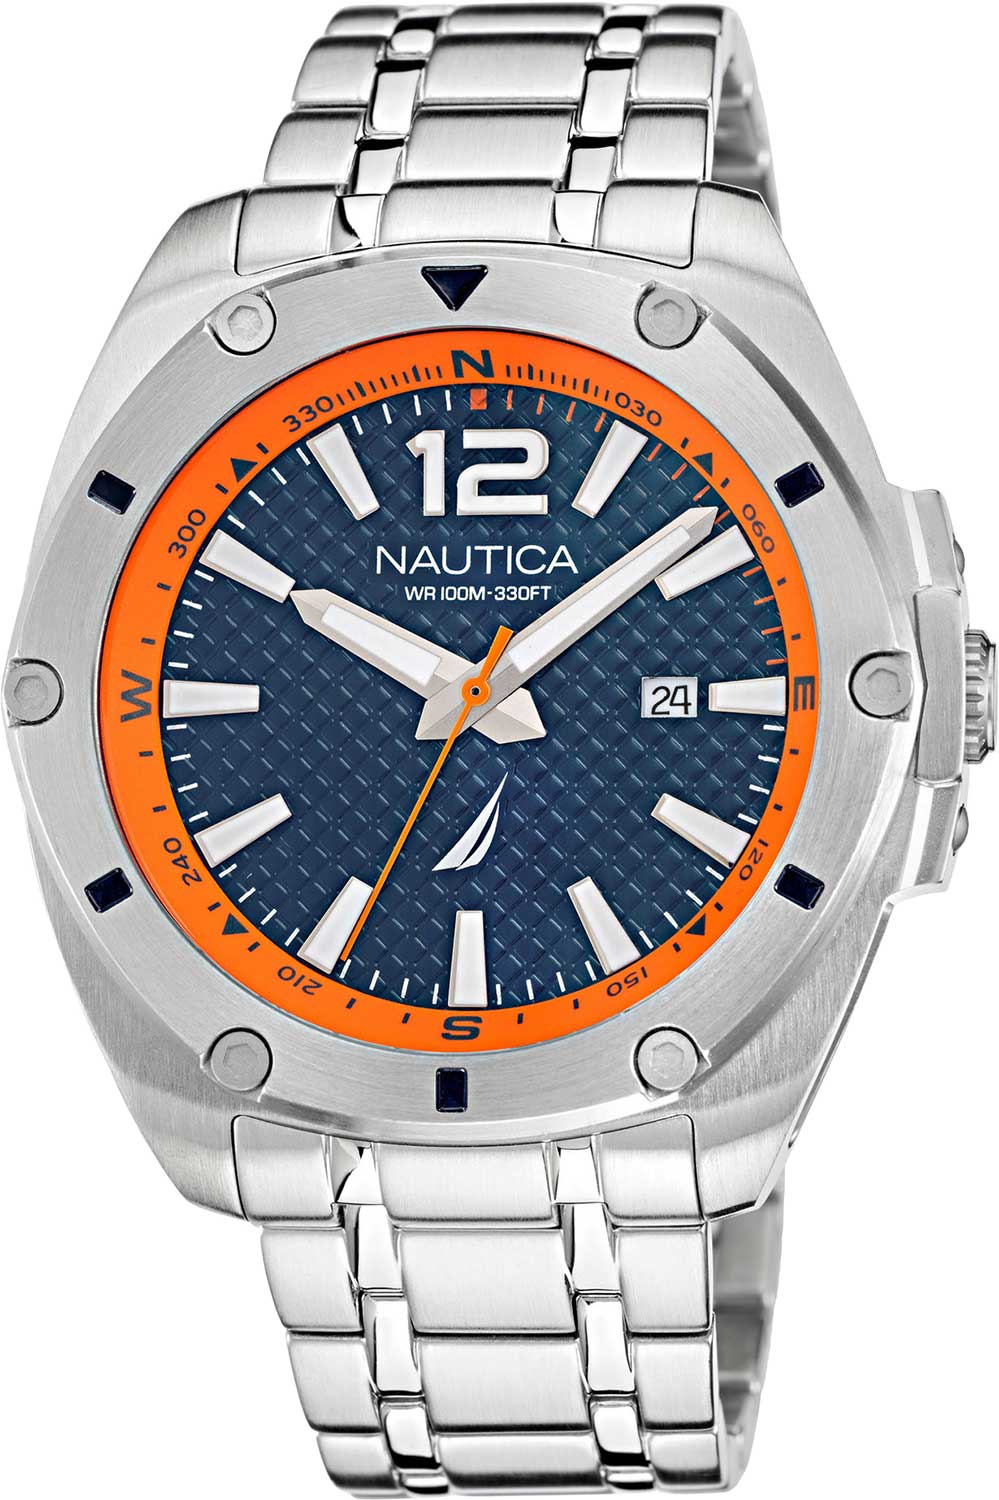   Nautica NAPTCS220